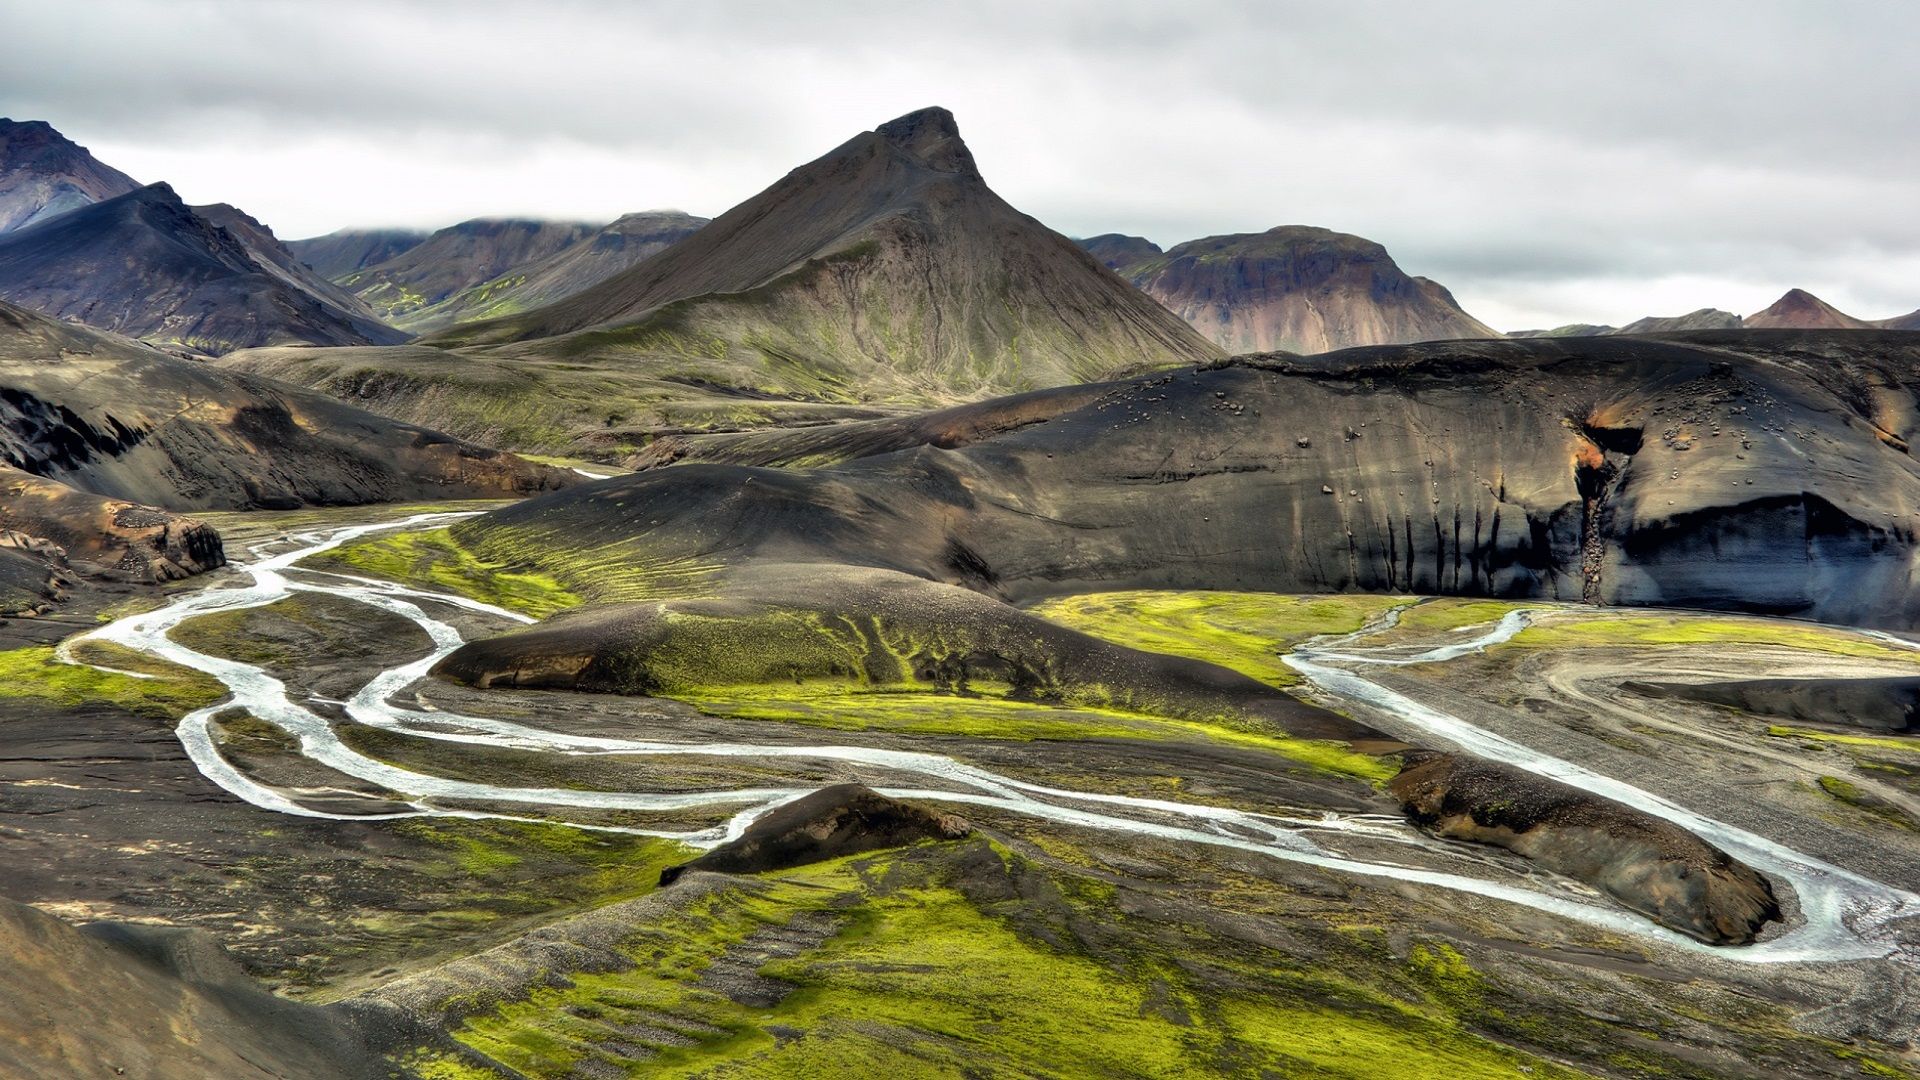 iceland cycling - Szukaj w Google | Islandia | Pinterest | Iceland ...